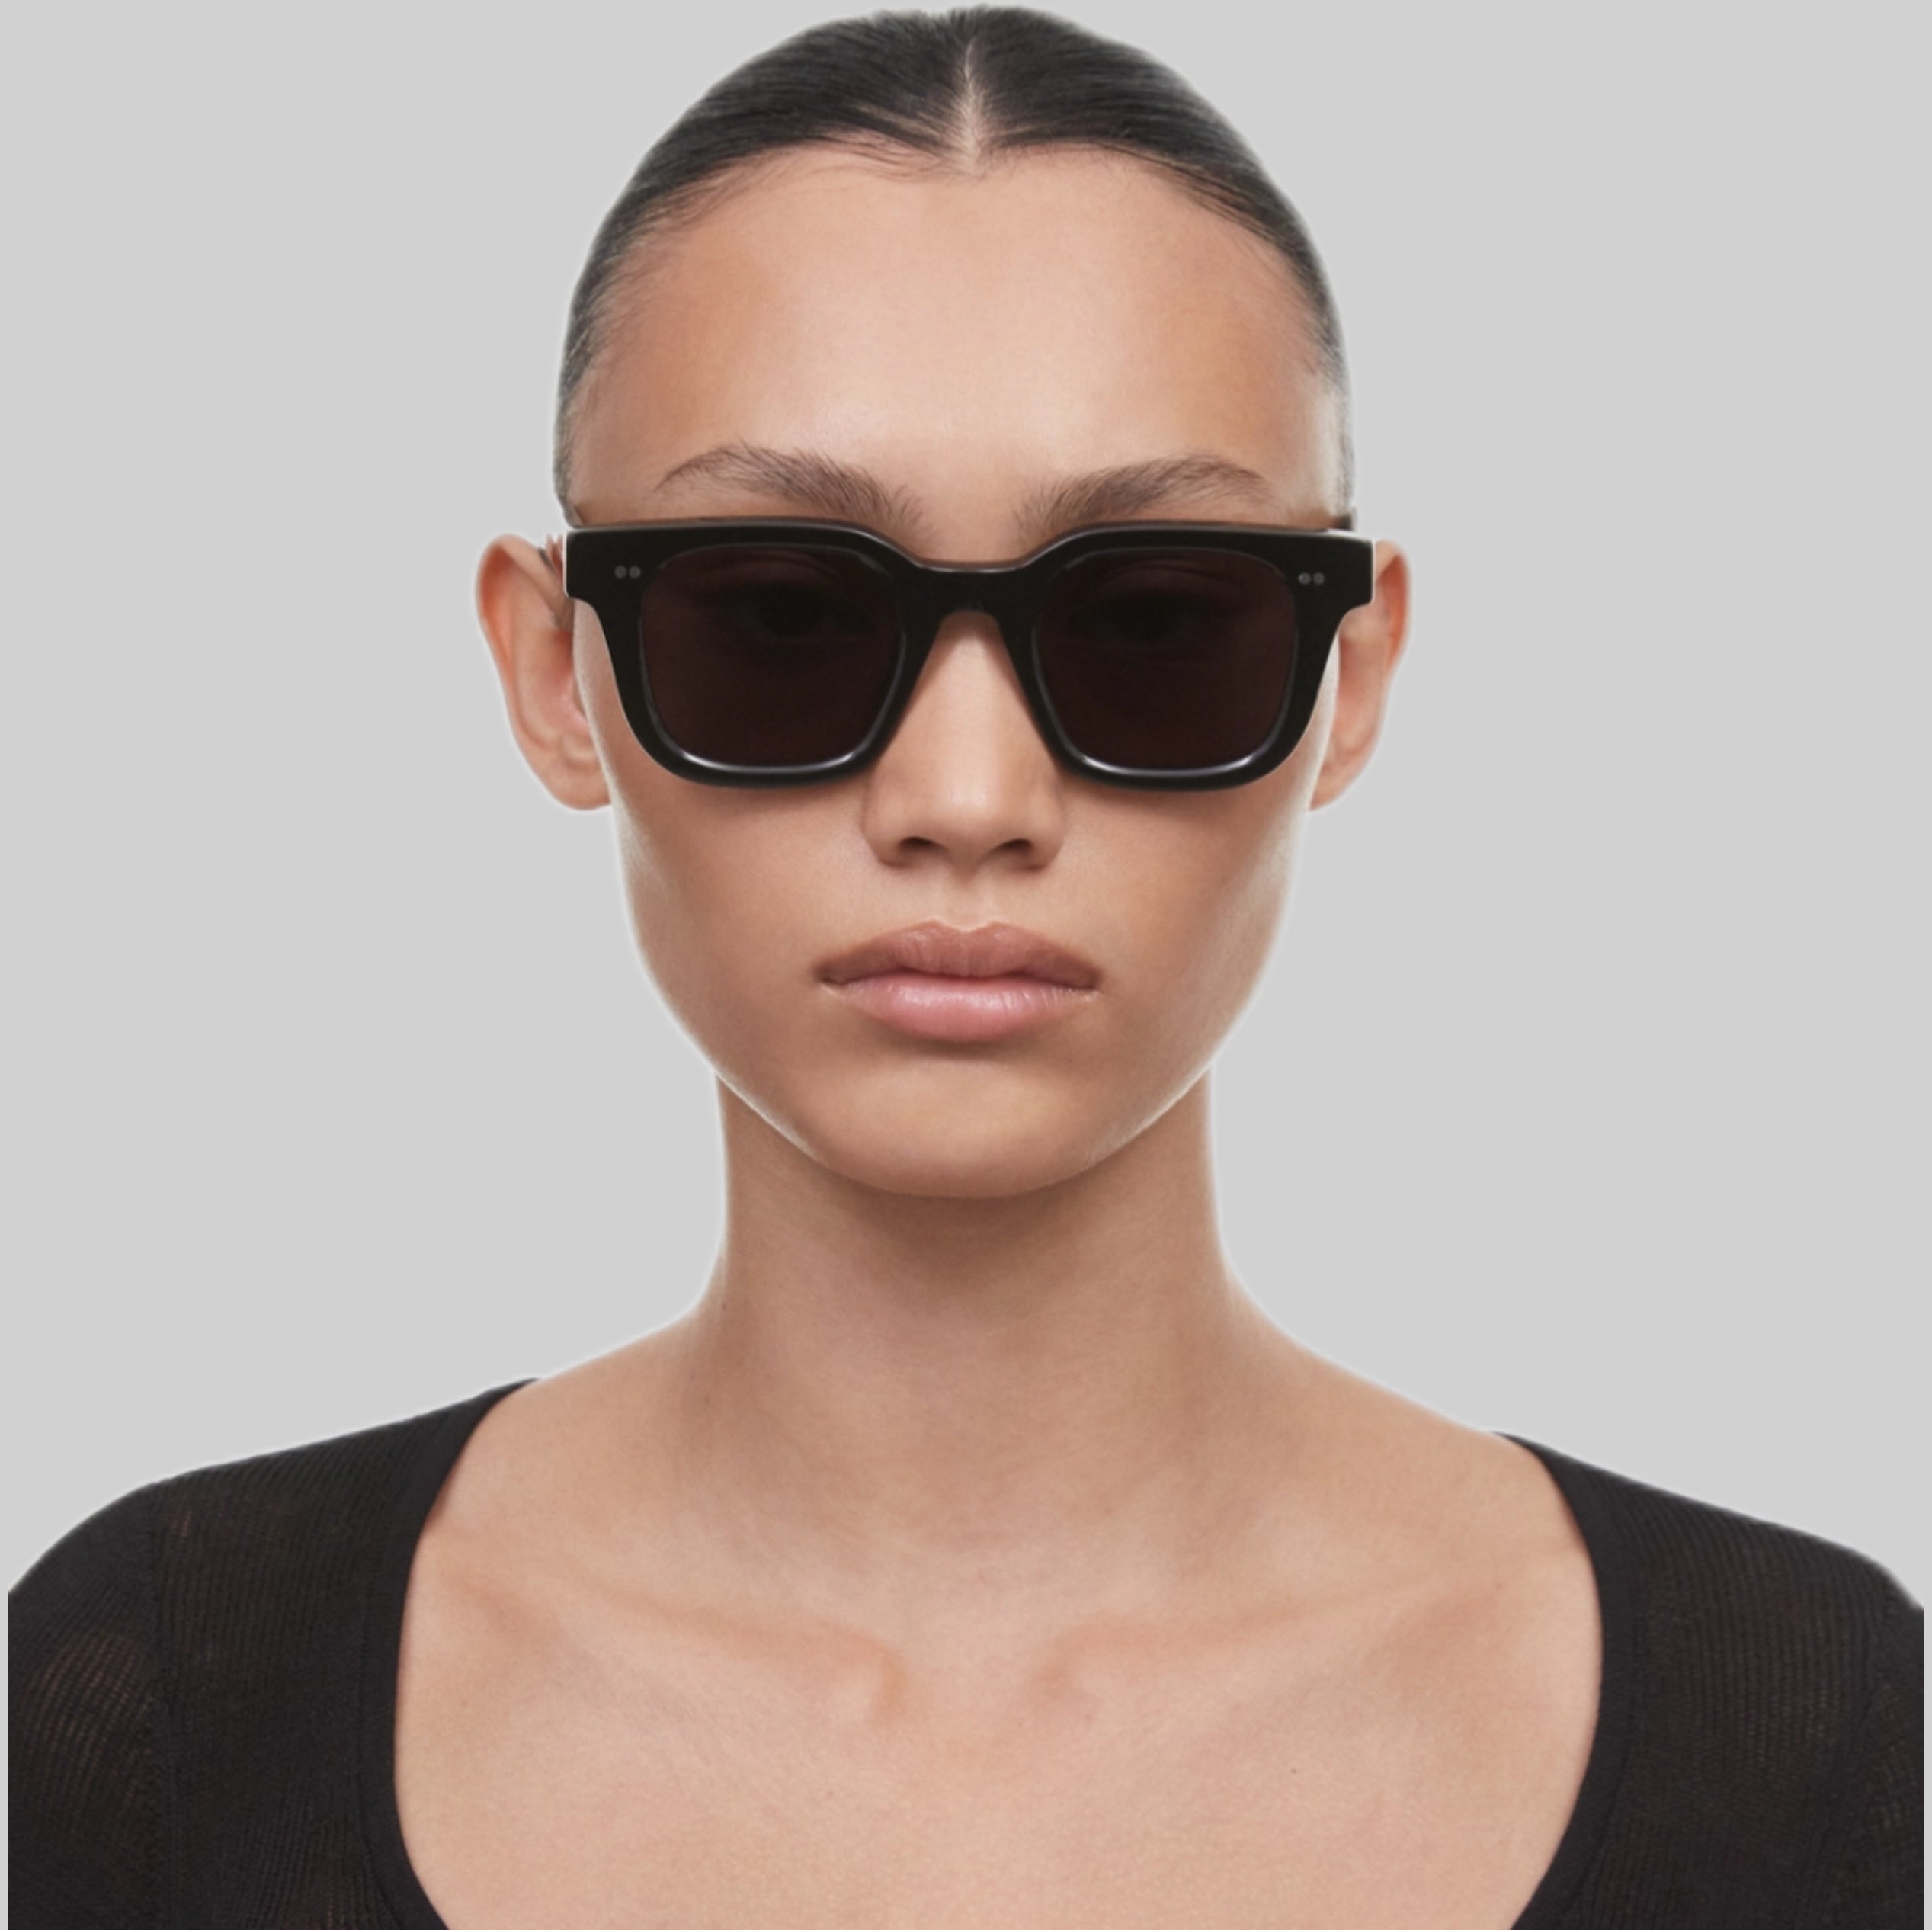 Chimi sunglasses, black, frontside, women, model